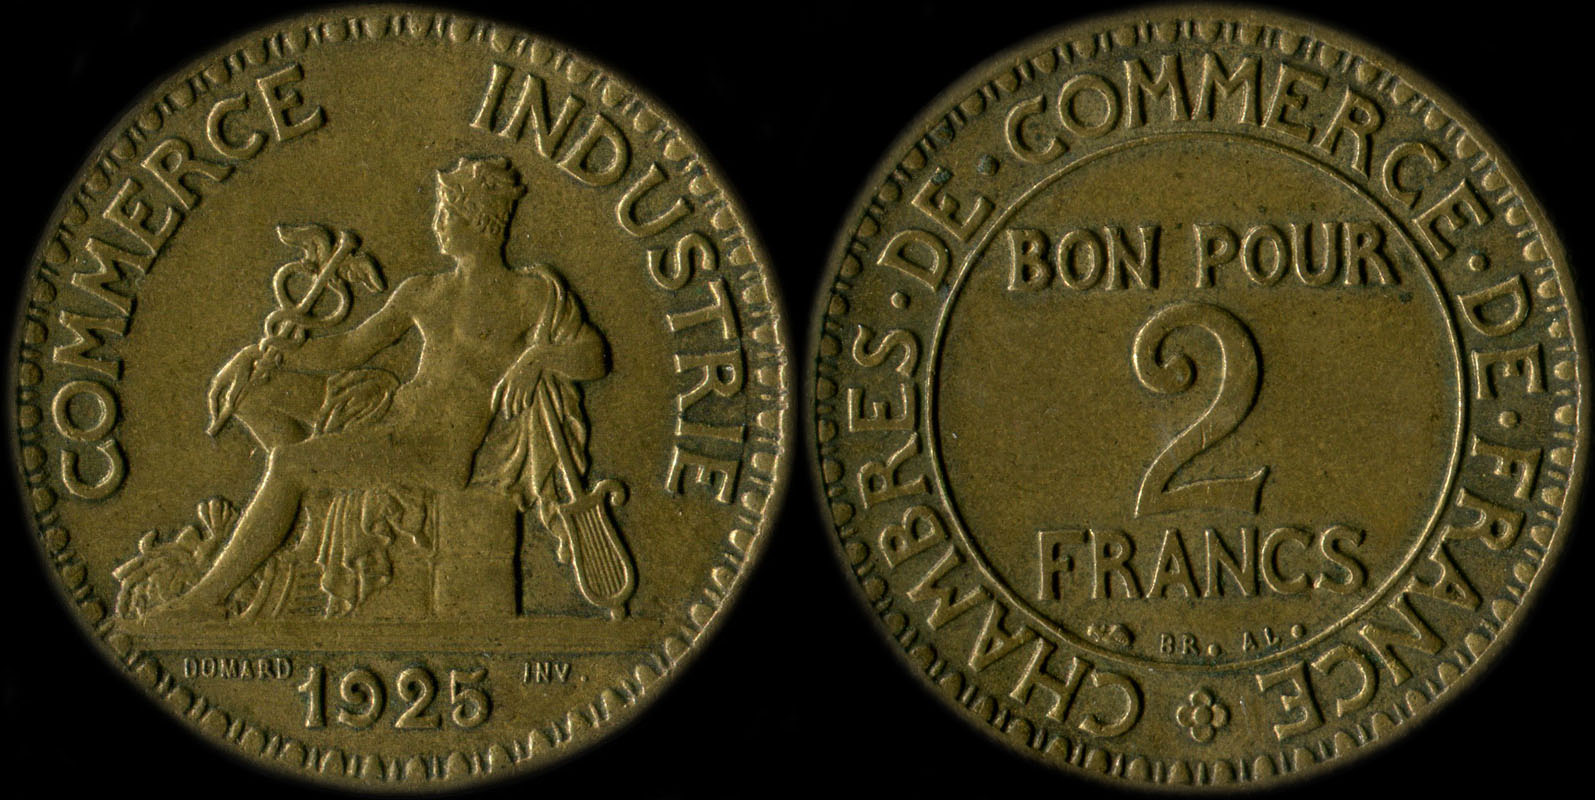 Pice de 2 francs 1925 variante avec 5 ouvert